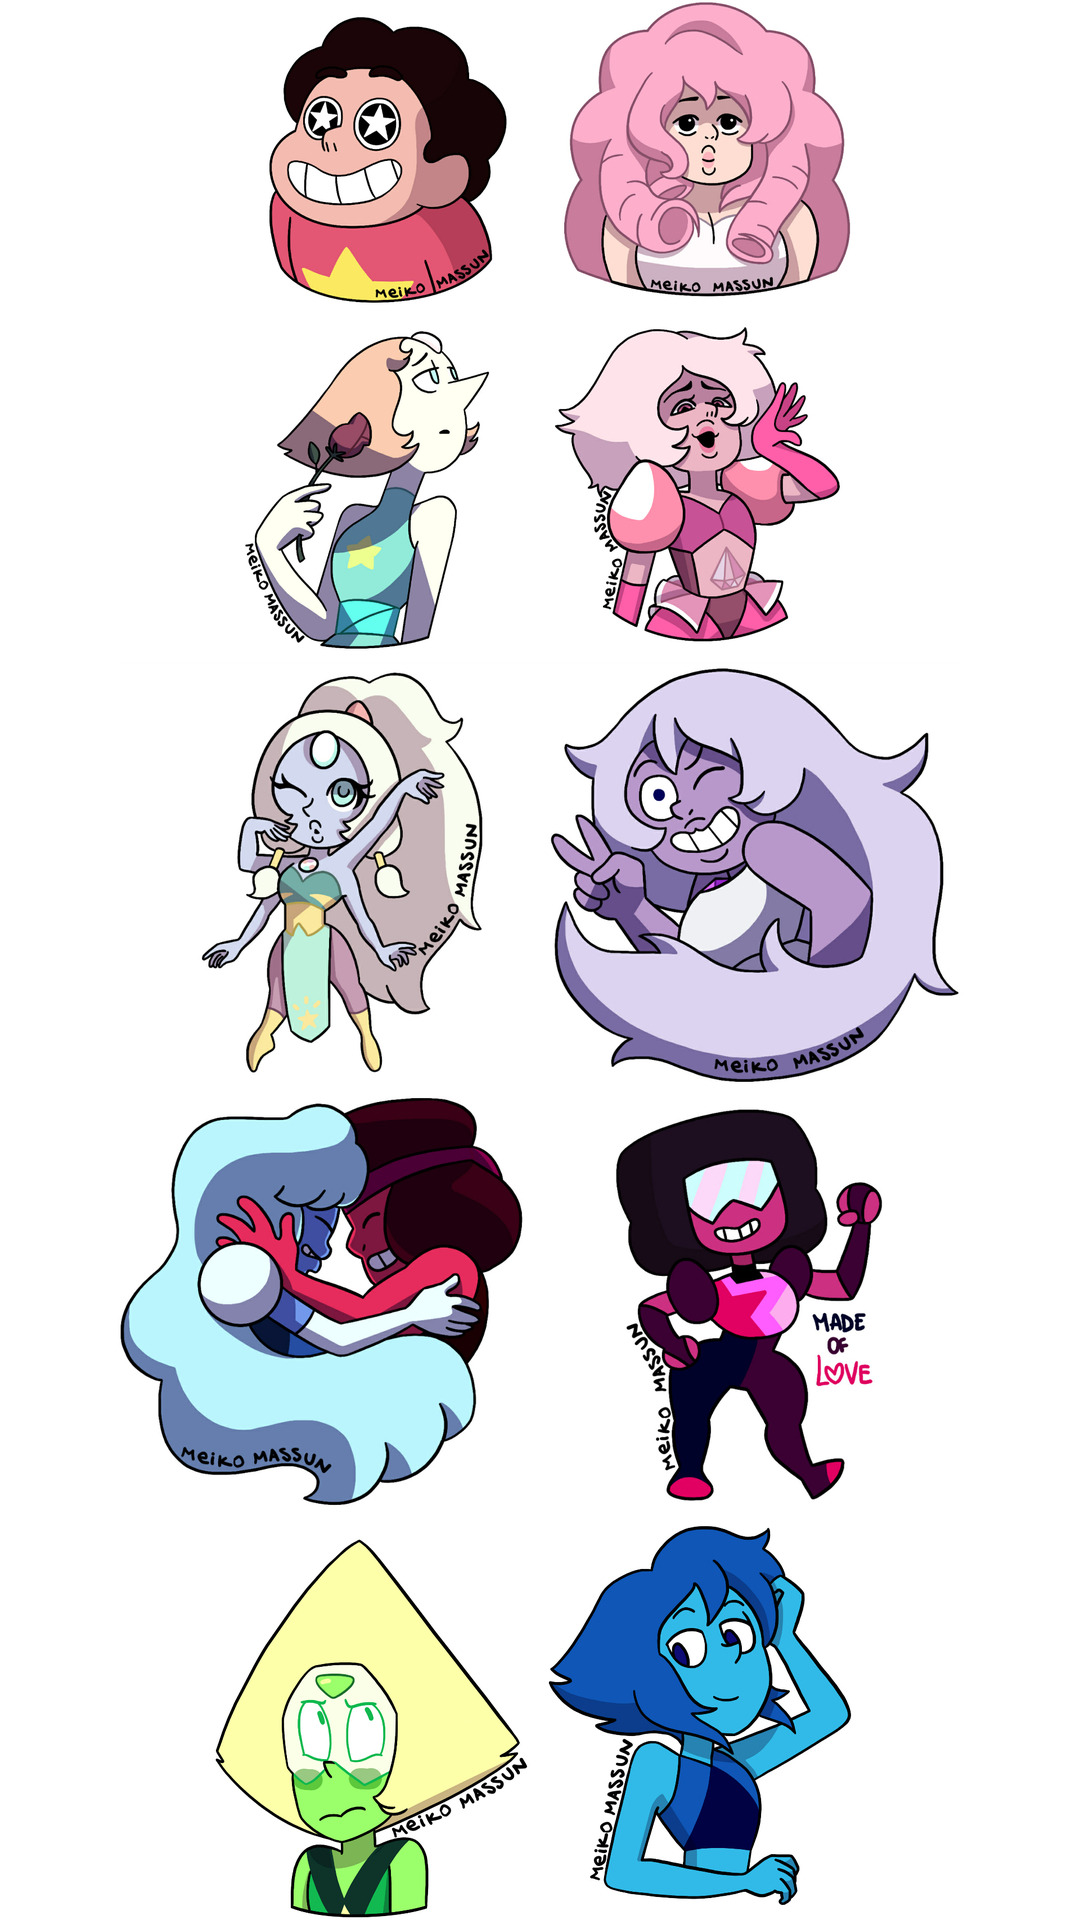 These are the SU sticker designs I’ve made so far